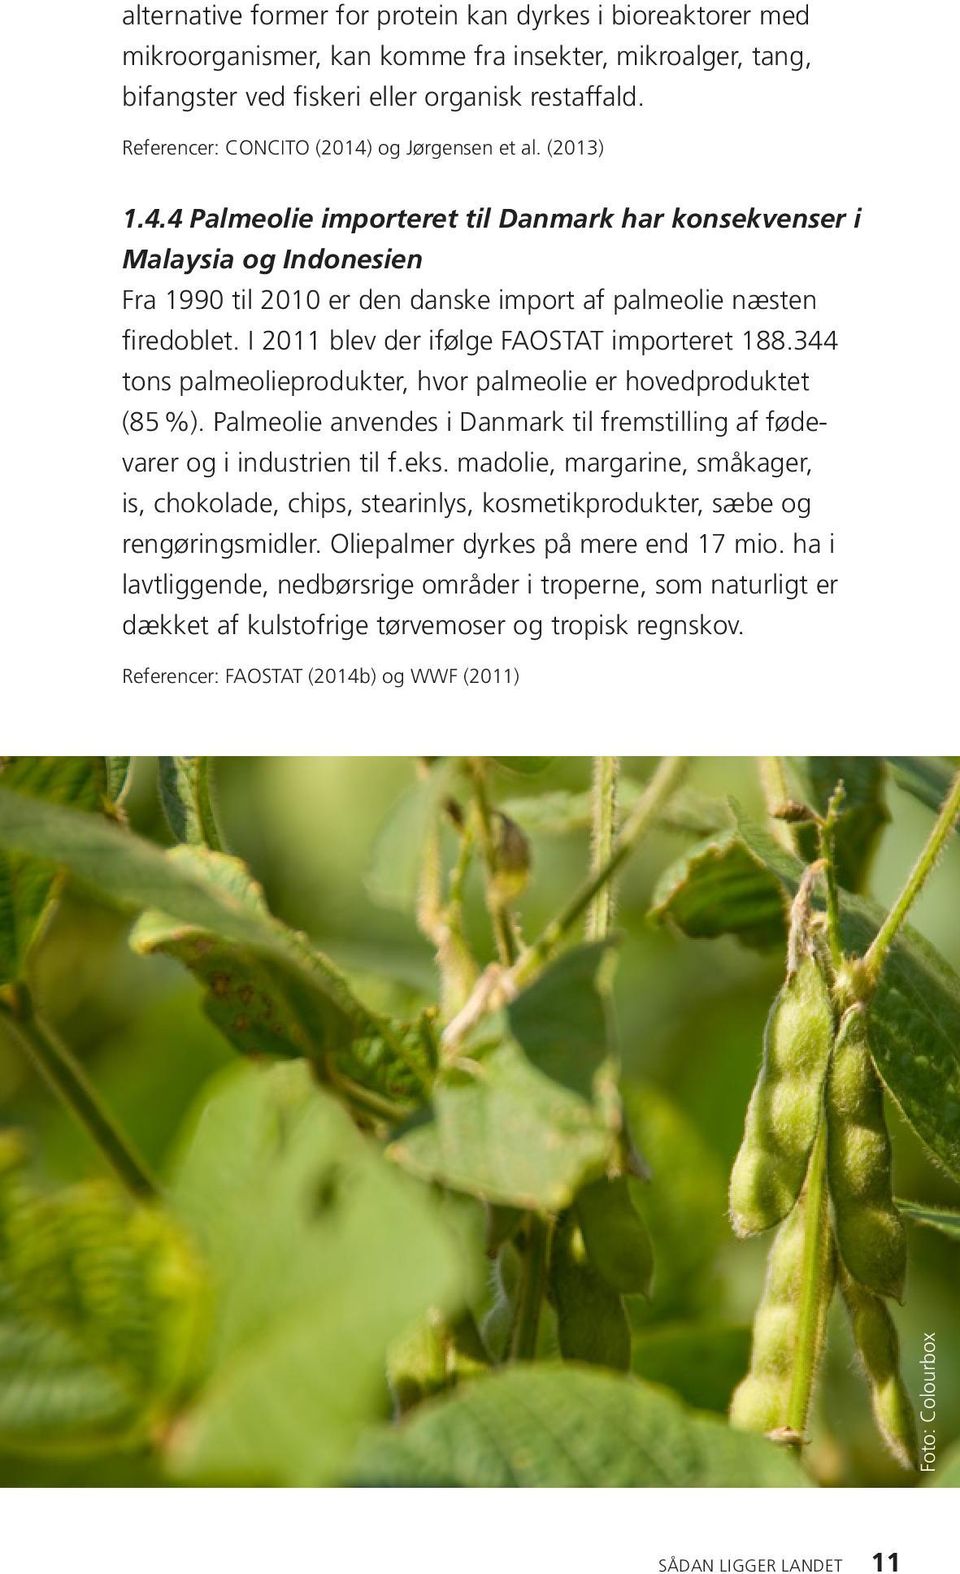 I 211 blev der ifølge FAOSTAT importeret 188.344 tons palmeolieprodukter, hvor palmeolie er hovedproduktet (85%). Palmeolie anvendes i Danmark til fremstilling af fødevarer og i industrien til f.eks.